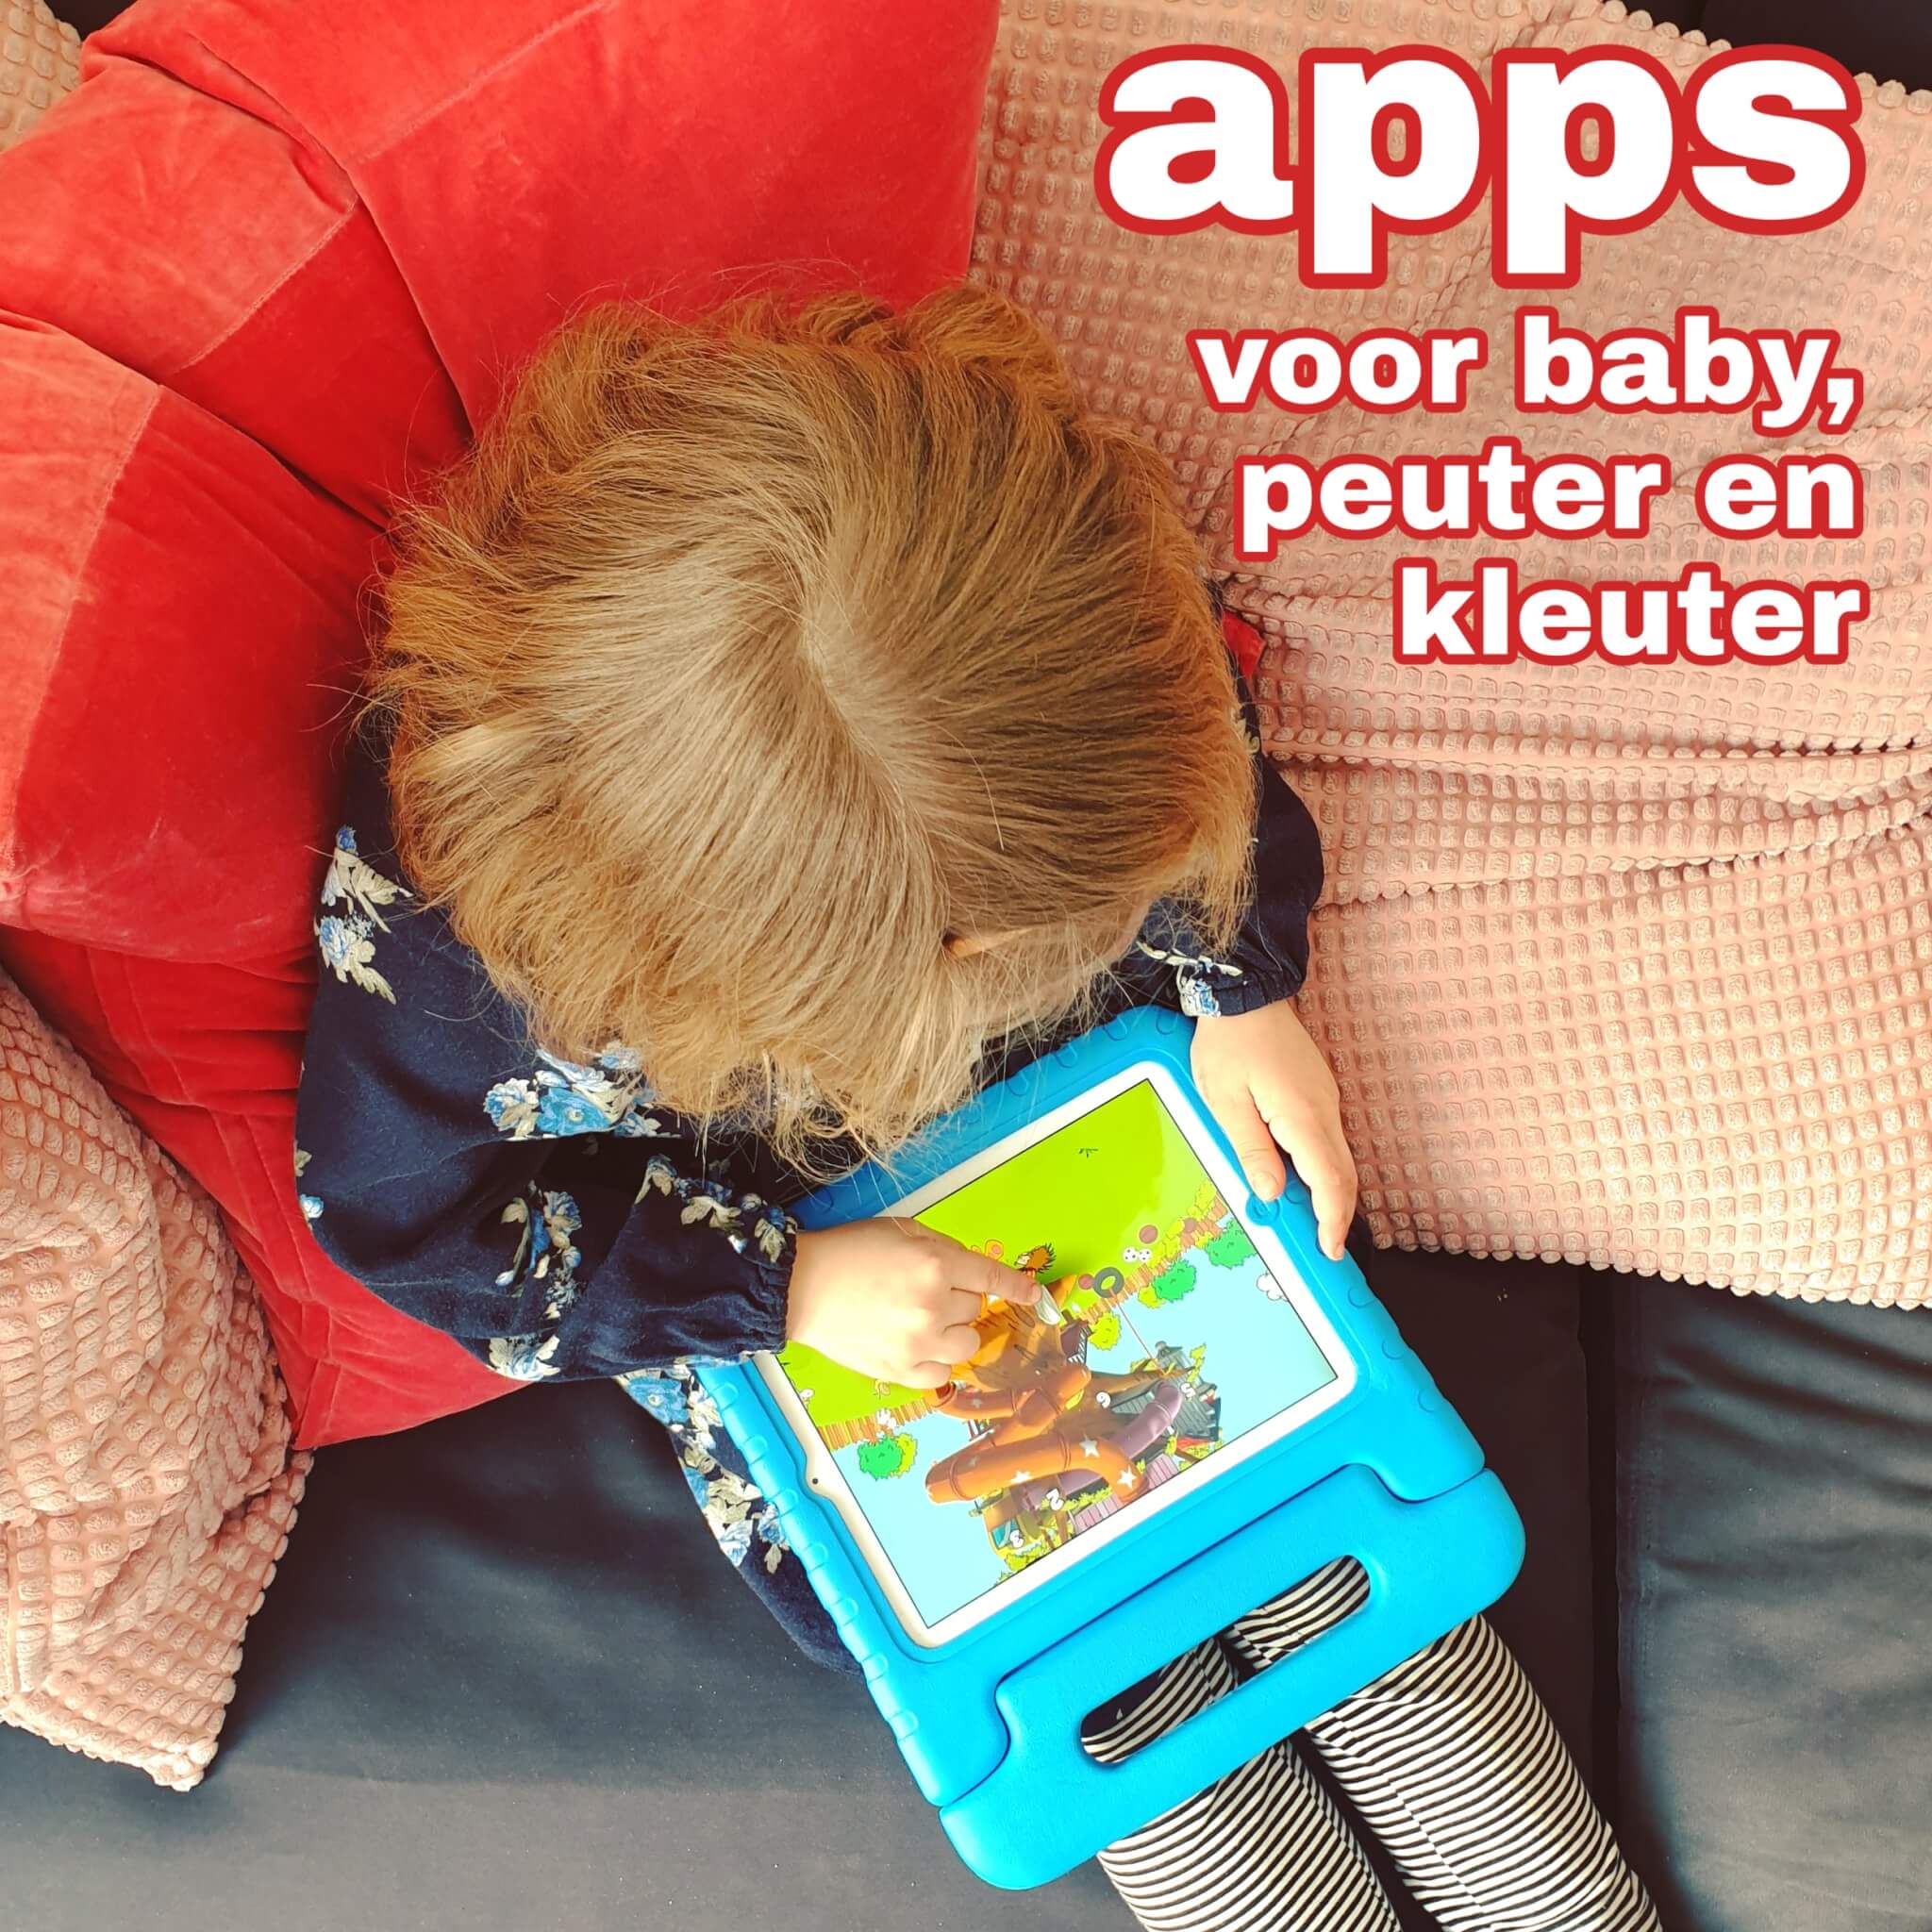 Ontembare consensus spiraal Apps voor kleine kinderen: baby, peuter en kleuter op tablet en smartphone  Leuk met kids